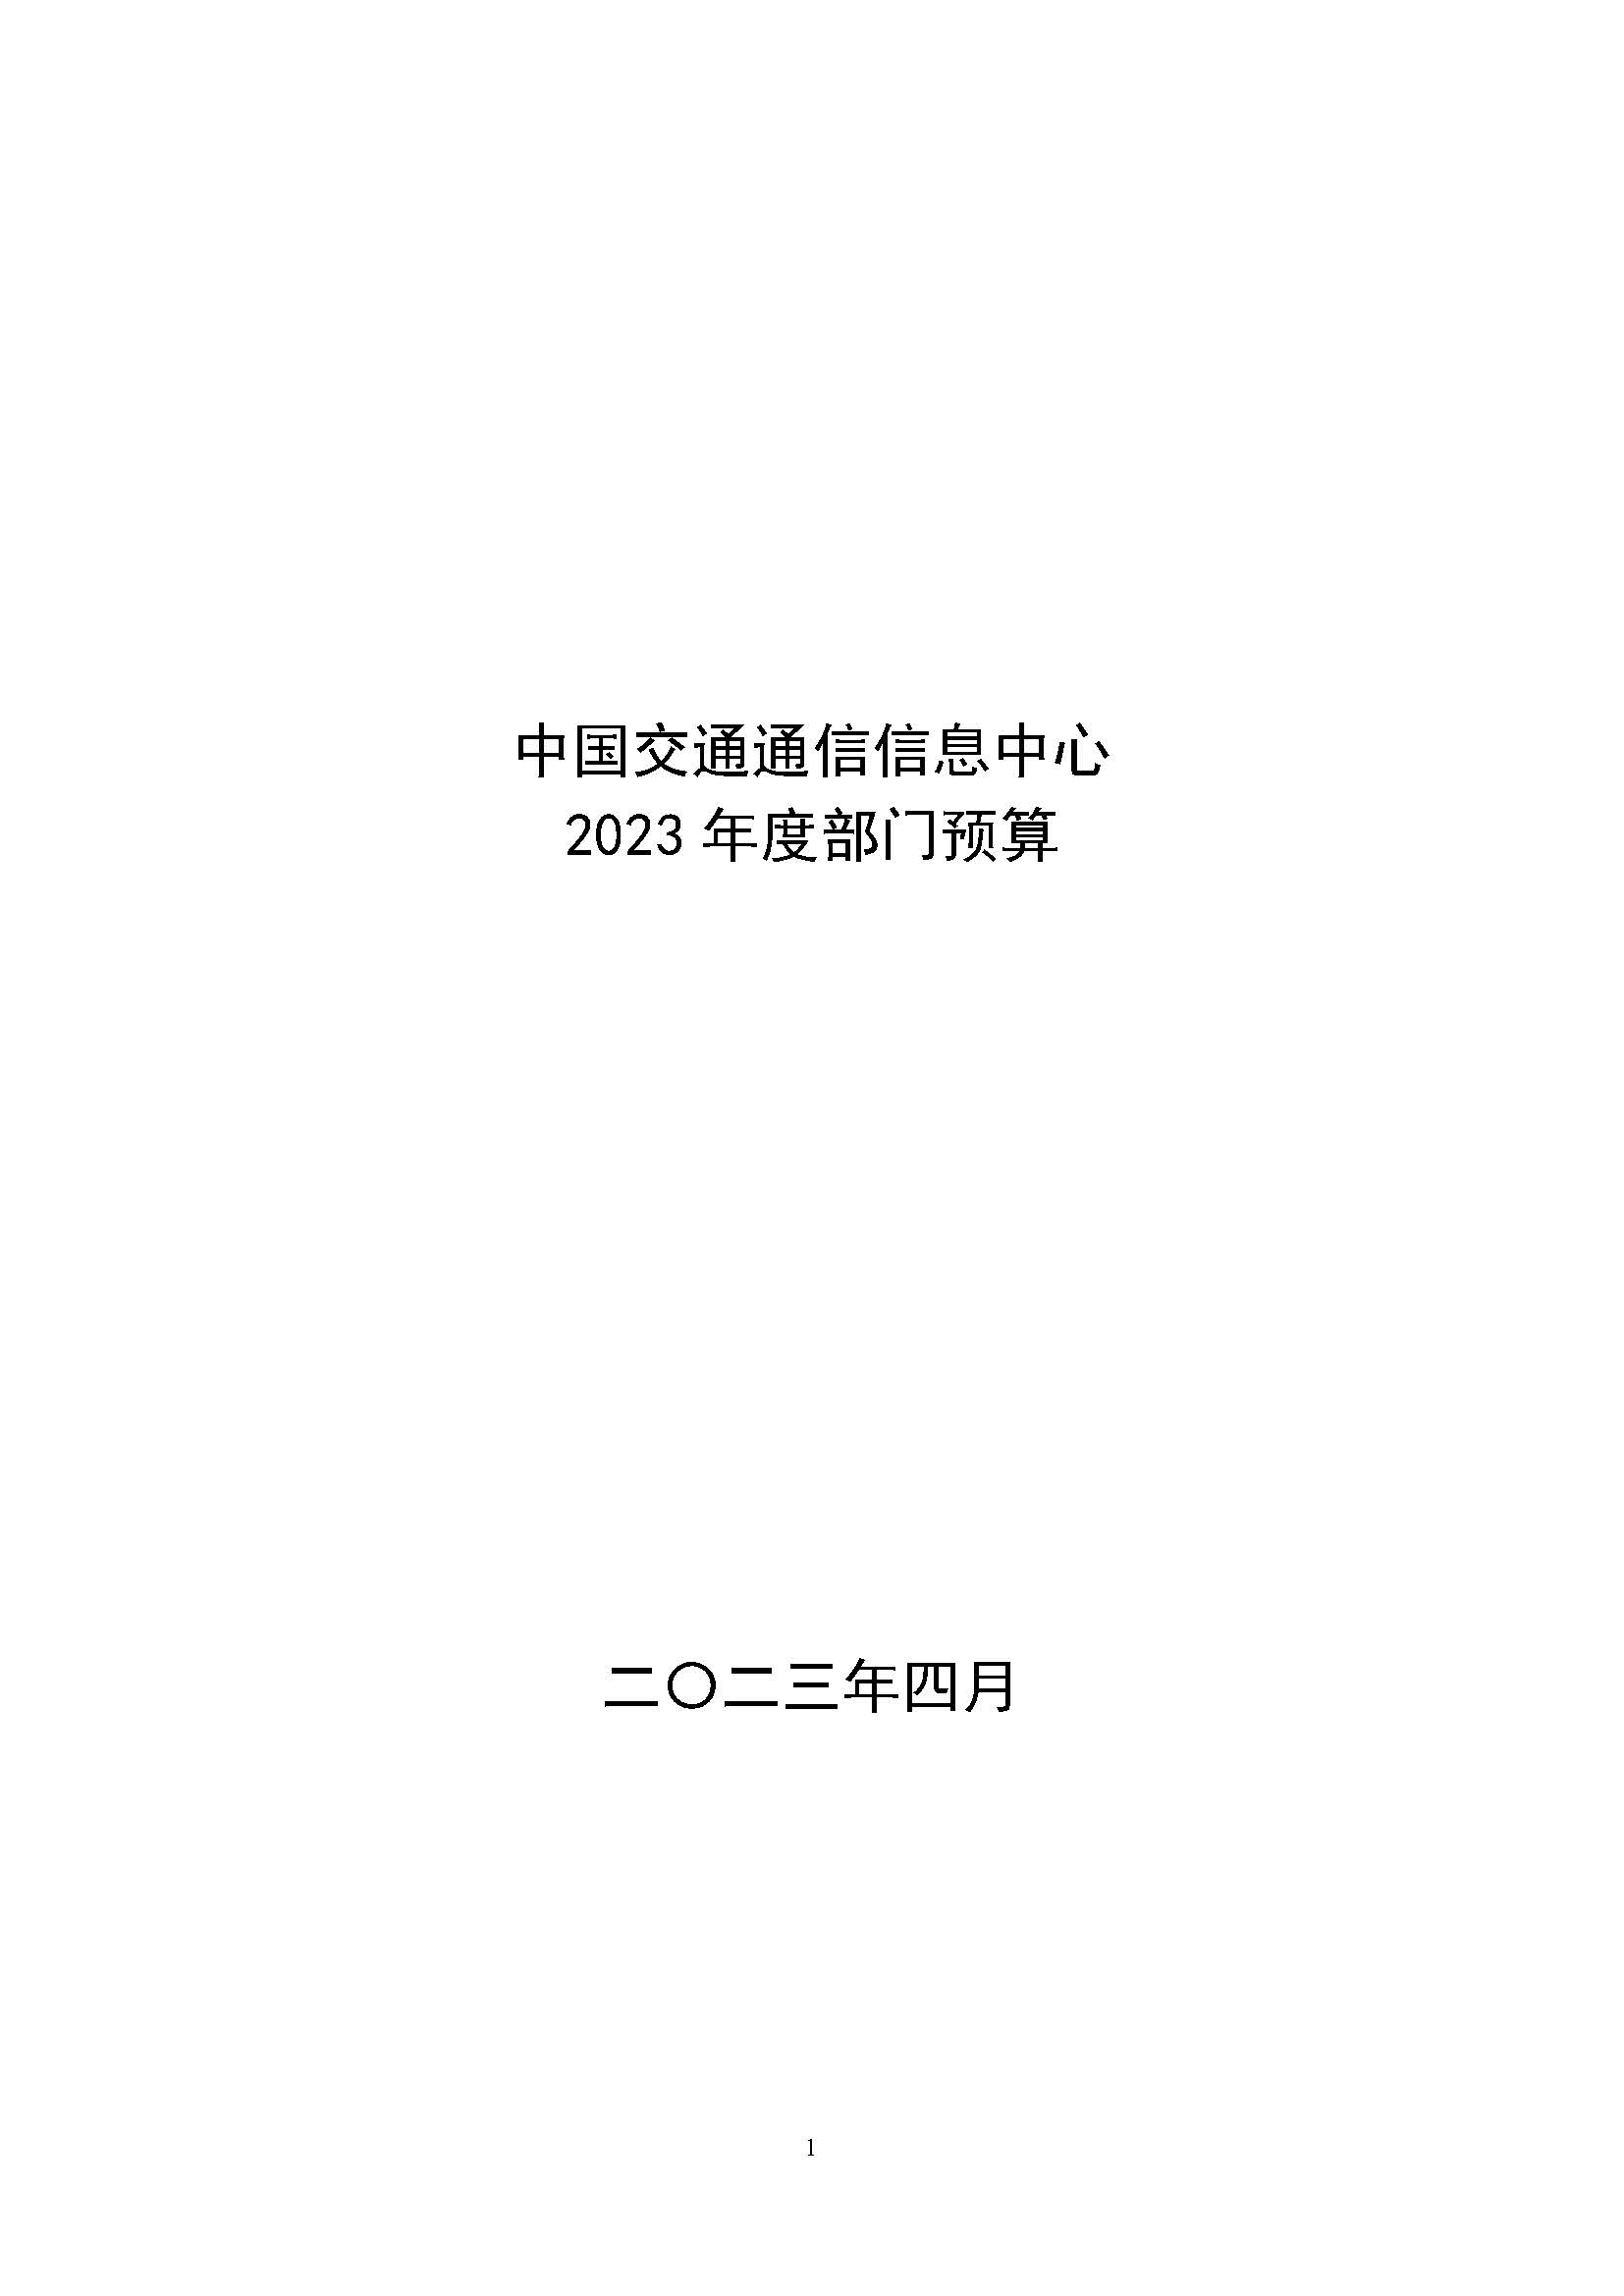 中国交通通信信息中心2023年度部门预算0420_页面_01.jpg